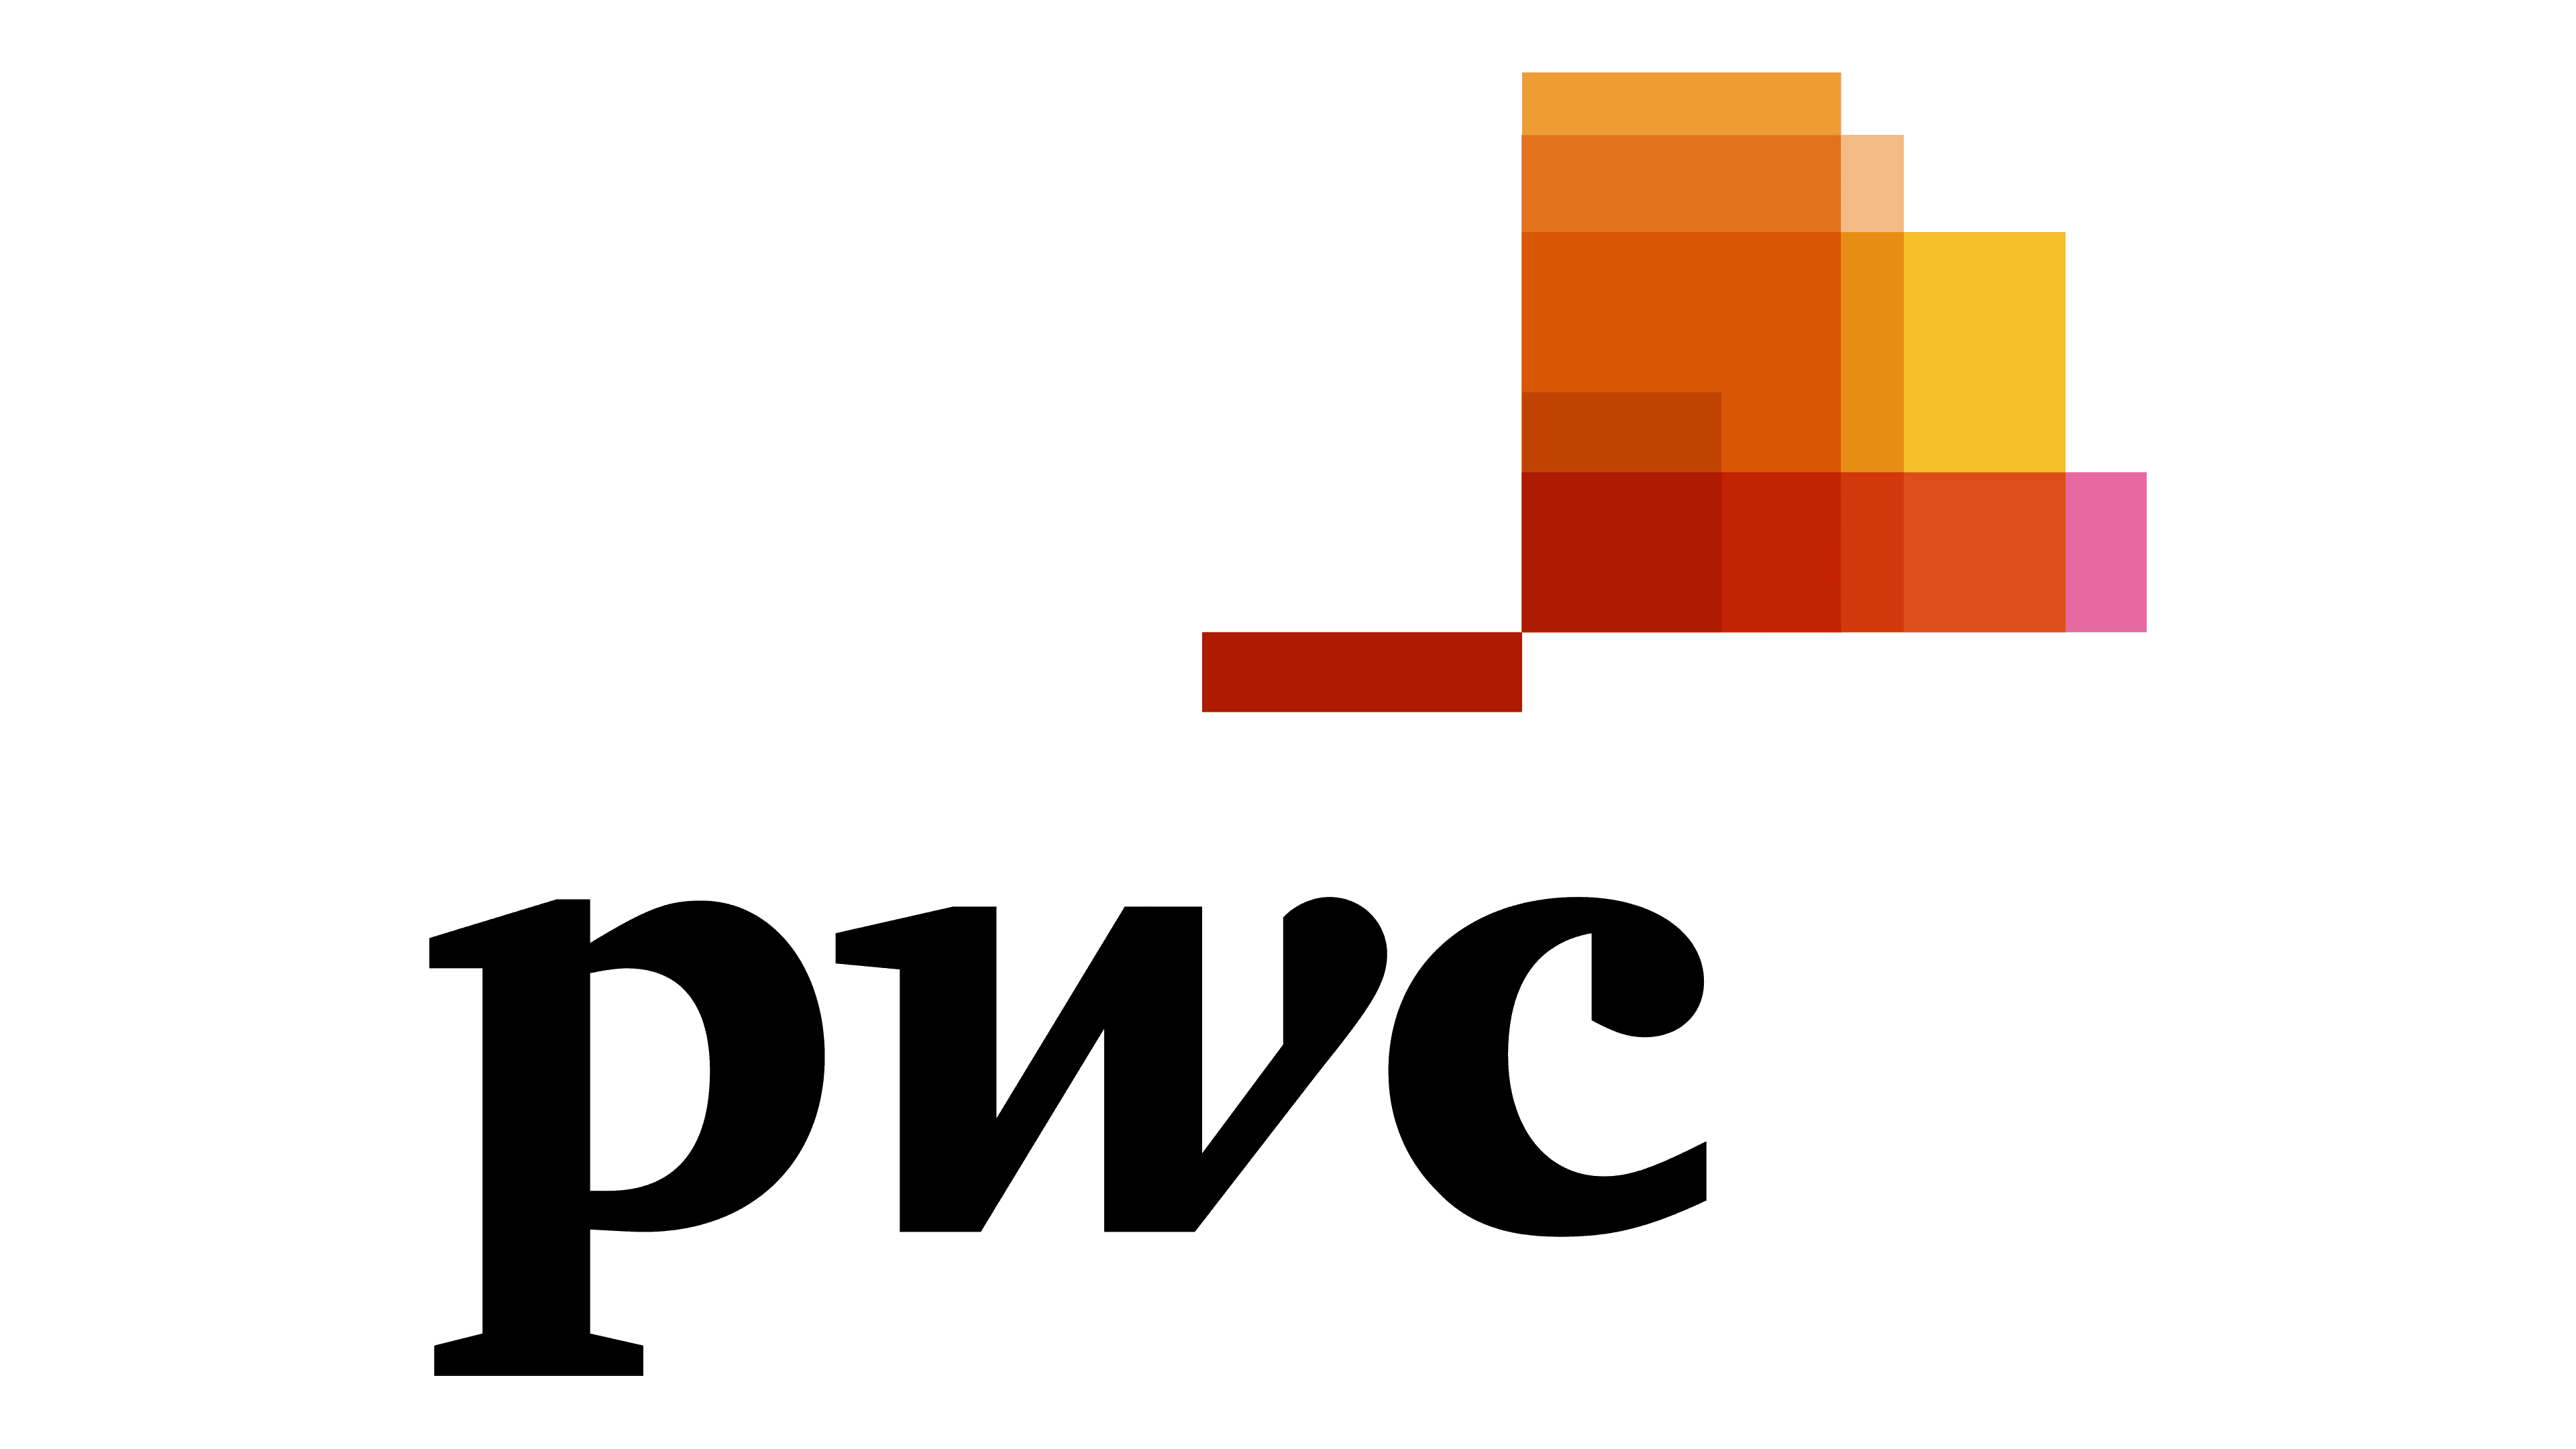 Image of PwC logo